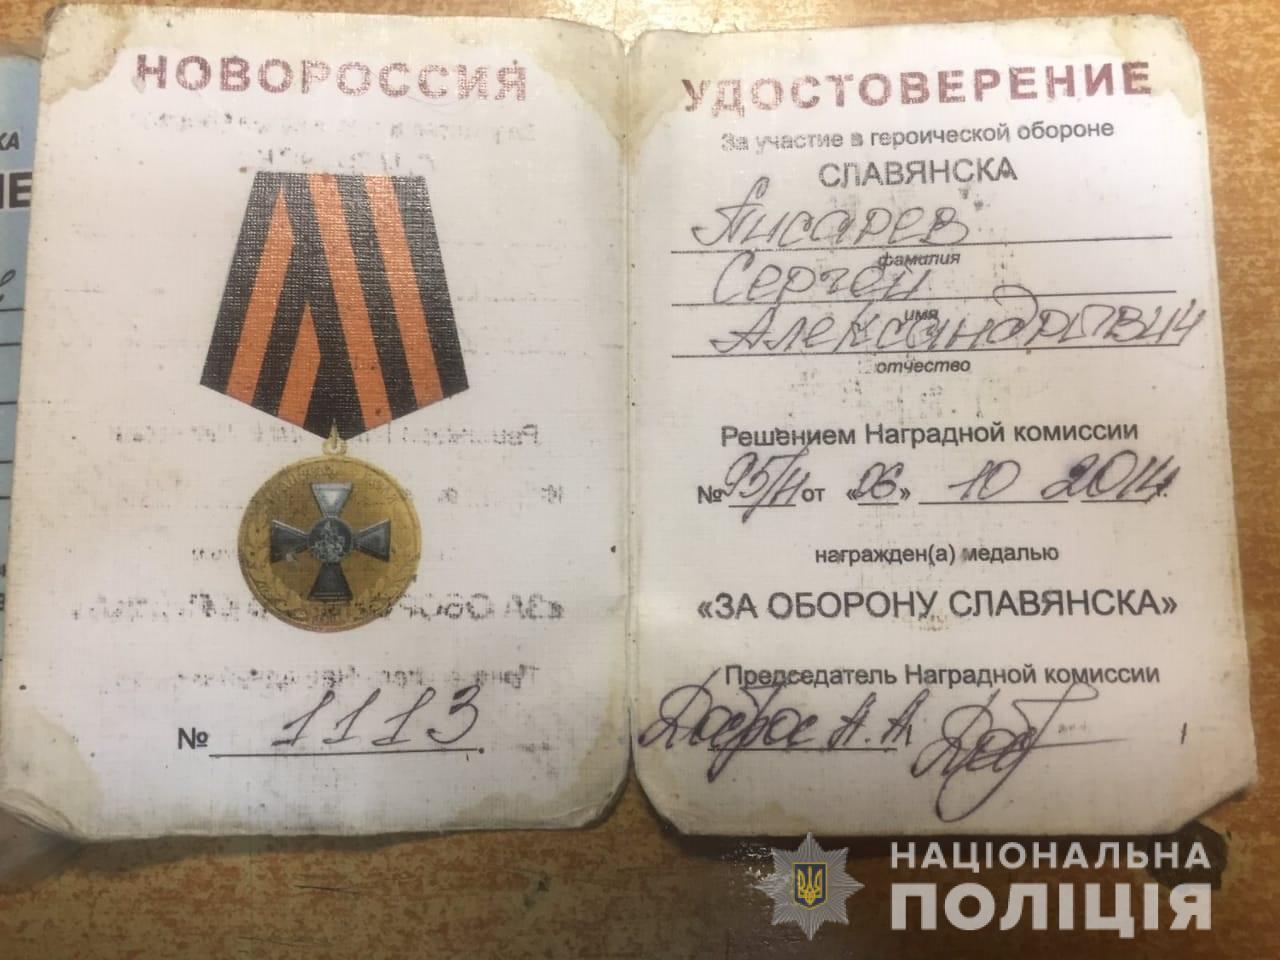 Задержанный был награжден медалью "За оборону Славянска"